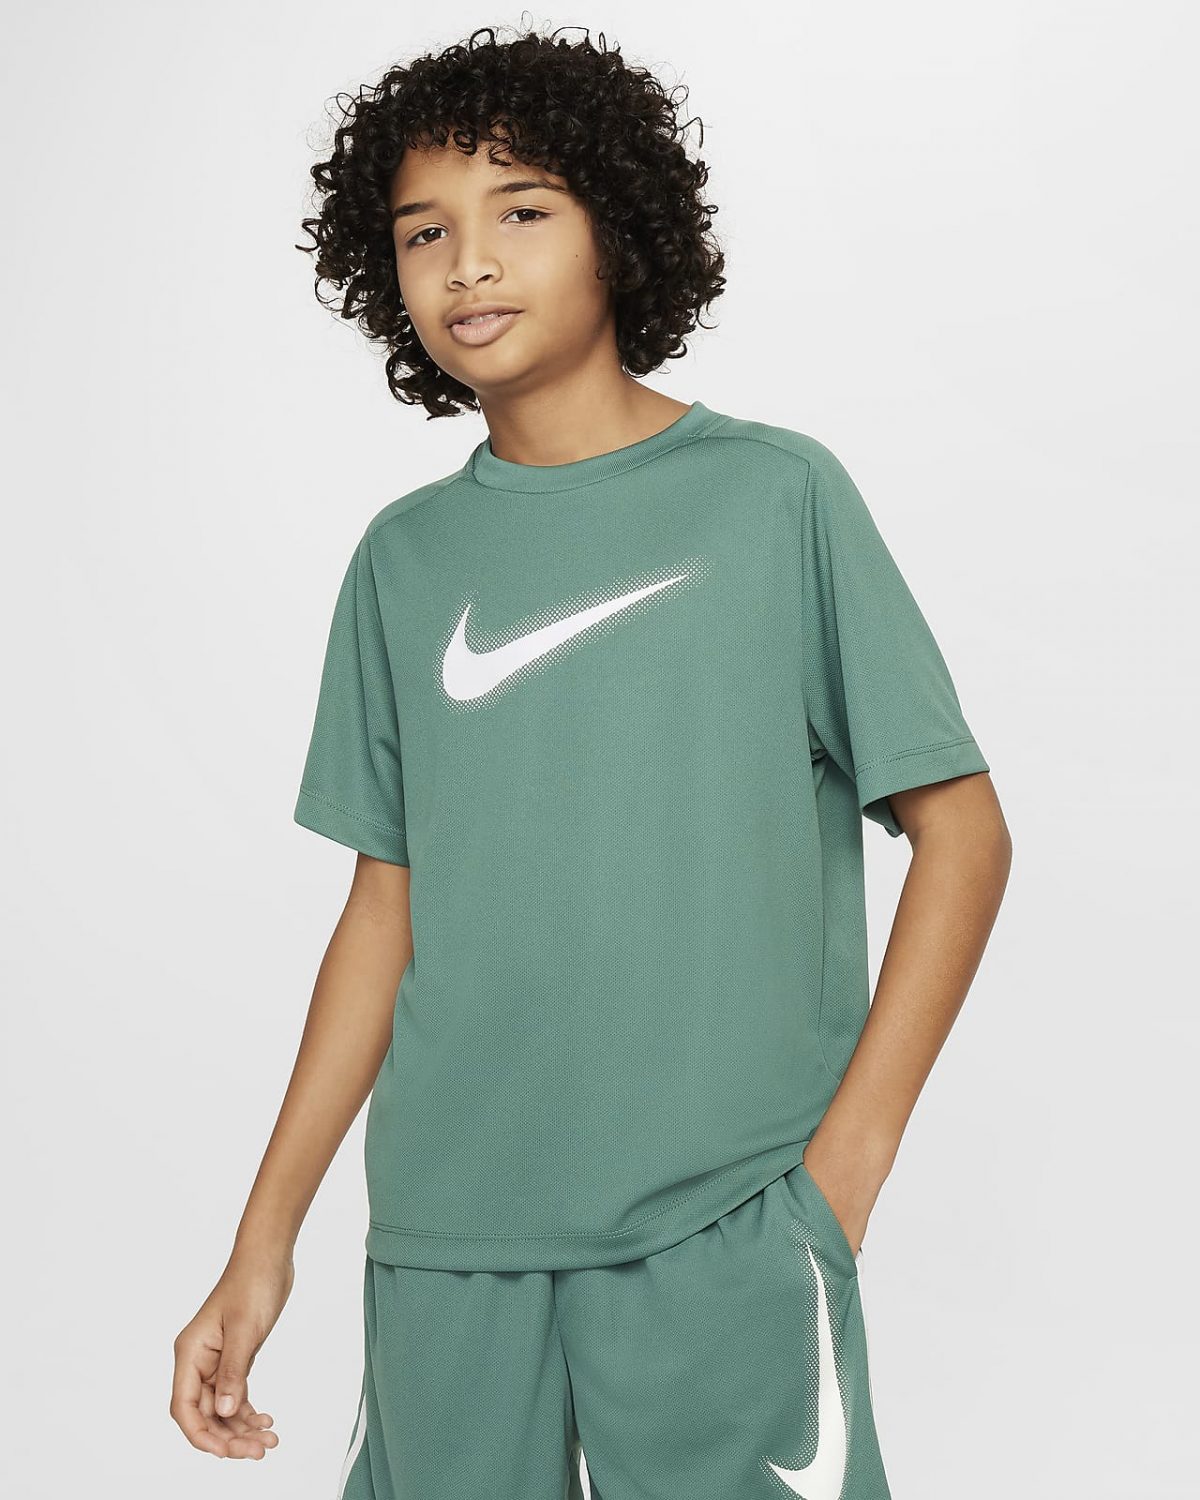 Детский топ Nike Multi Dri-FIT фото